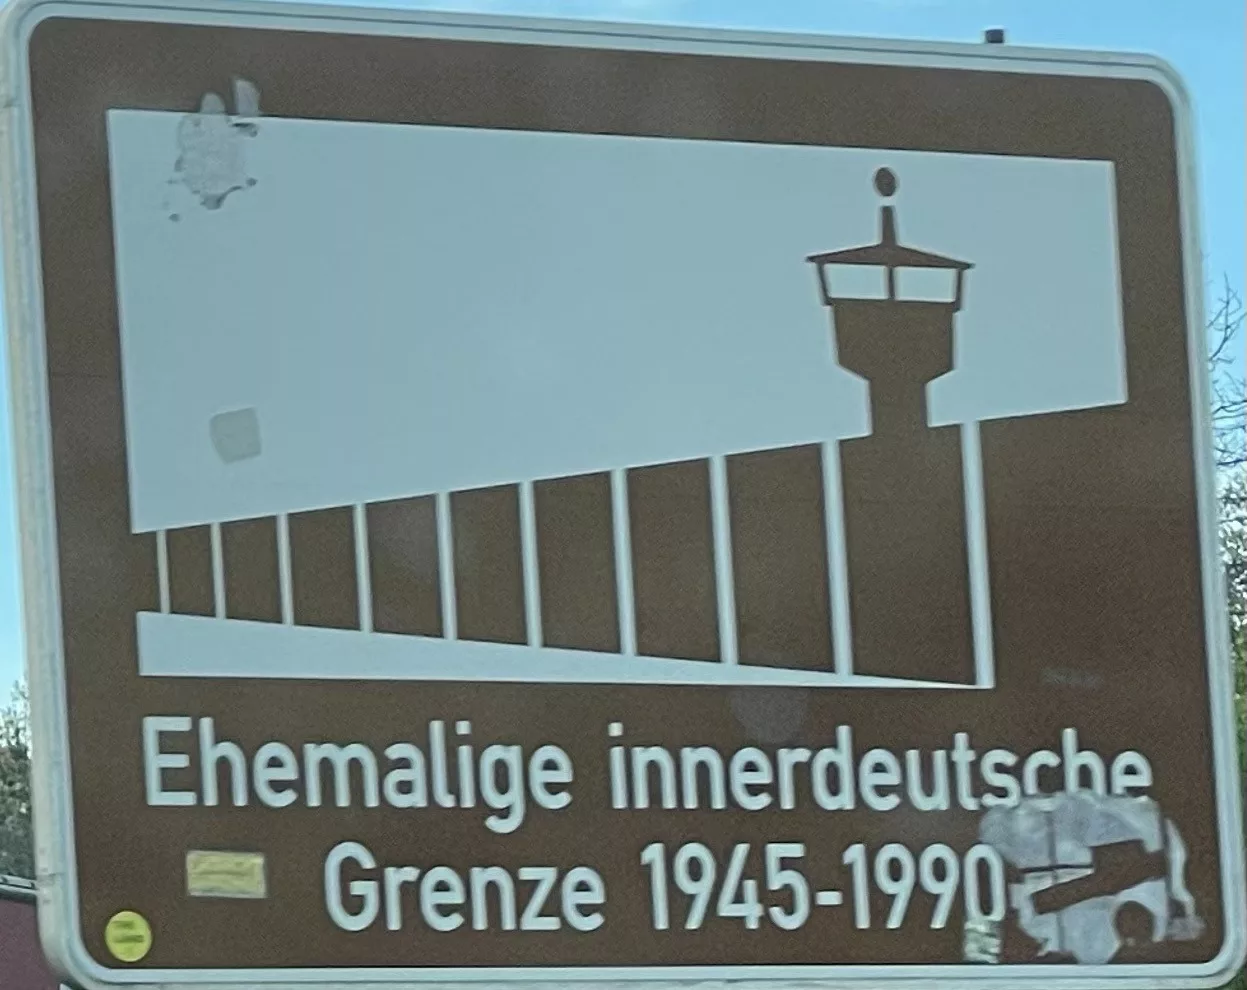 Schuld bei Hemstedt/Matienbirn zur ehemaligen inneerdeutschen Grenze.